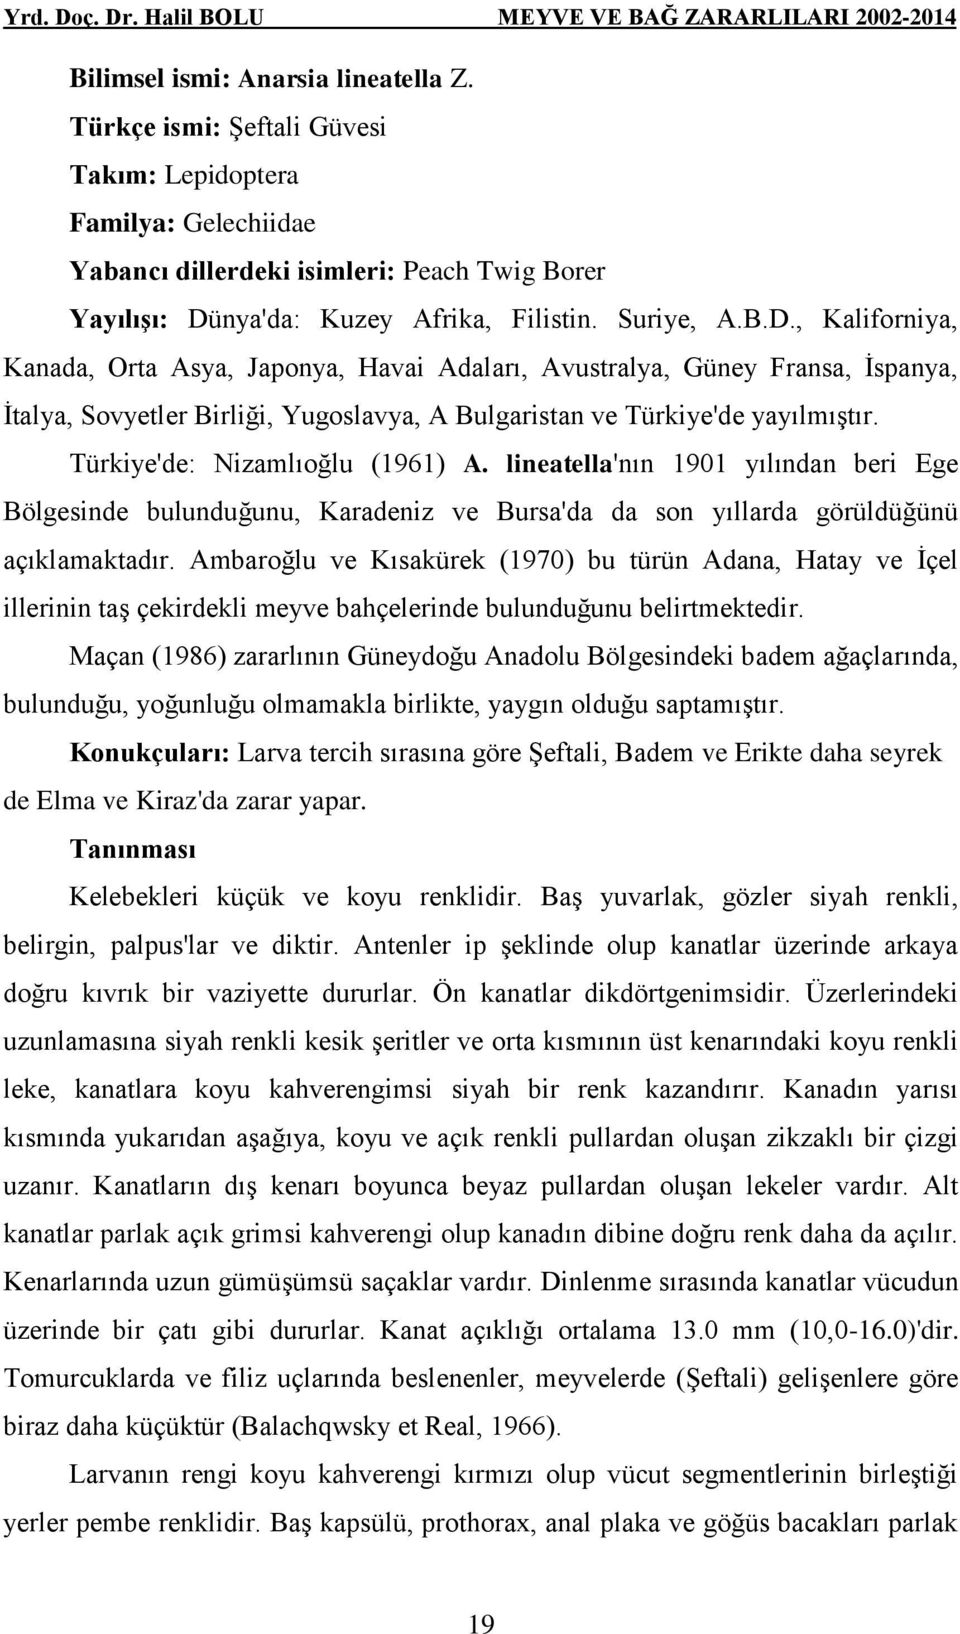 Türkiye'de: Nizamlıoğlu (1961) A. lineatella'nın 1901 yılından beri Ege Bölgesinde bulunduğunu, Karadeniz ve Bursa'da da son yıllarda görüldüğünü açıklamaktadır.